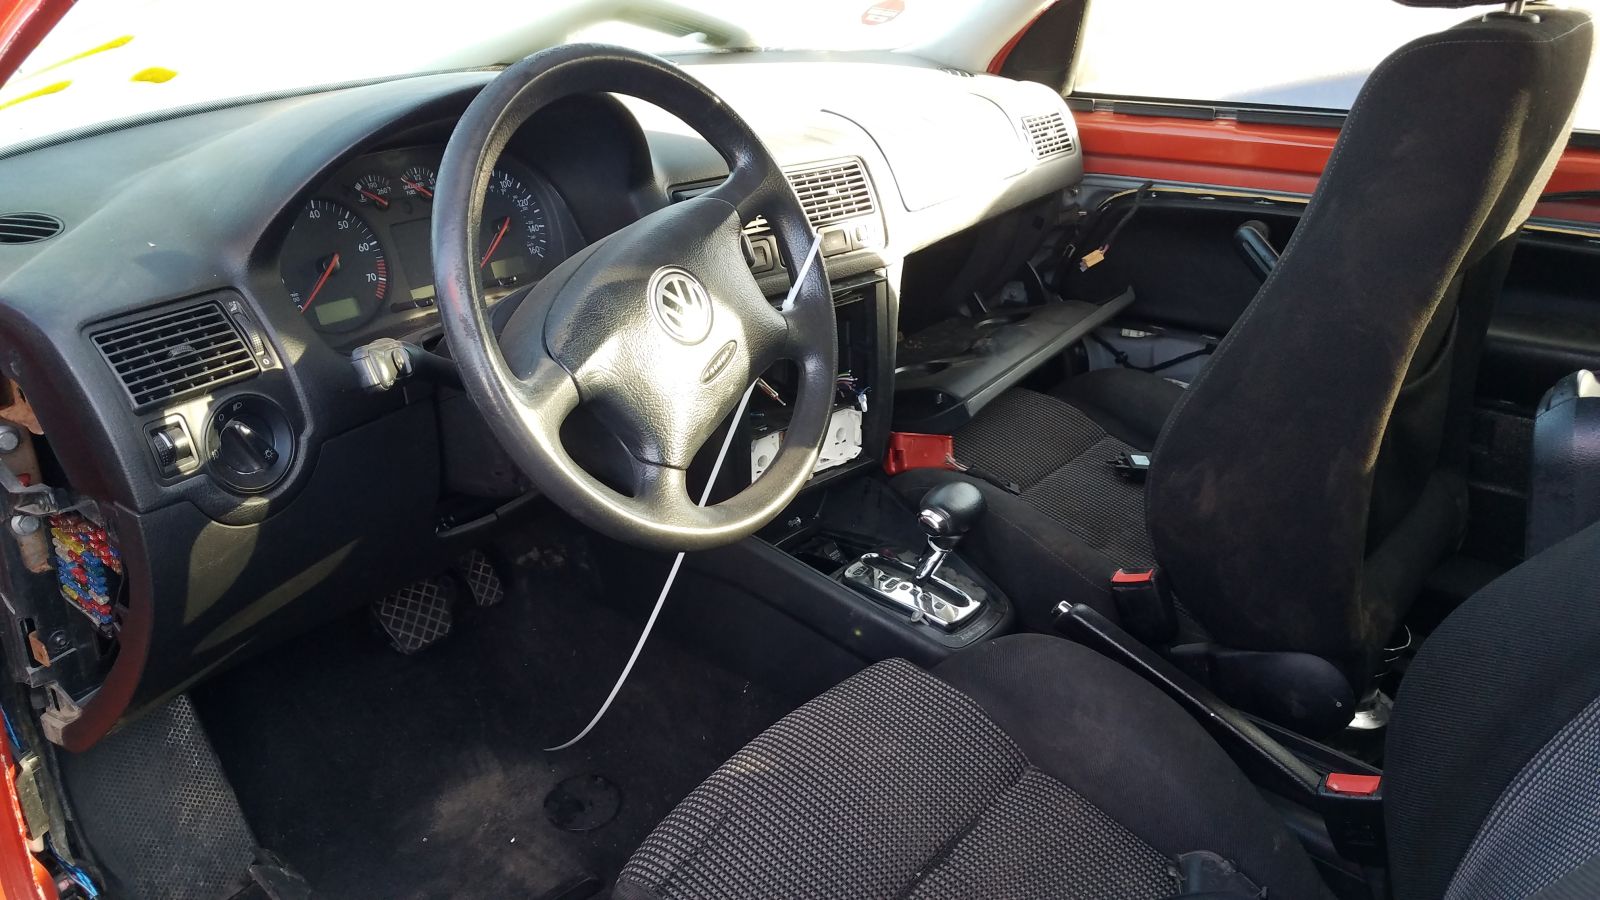 2000 Volkswagen GTI junkyard find - Autoblog